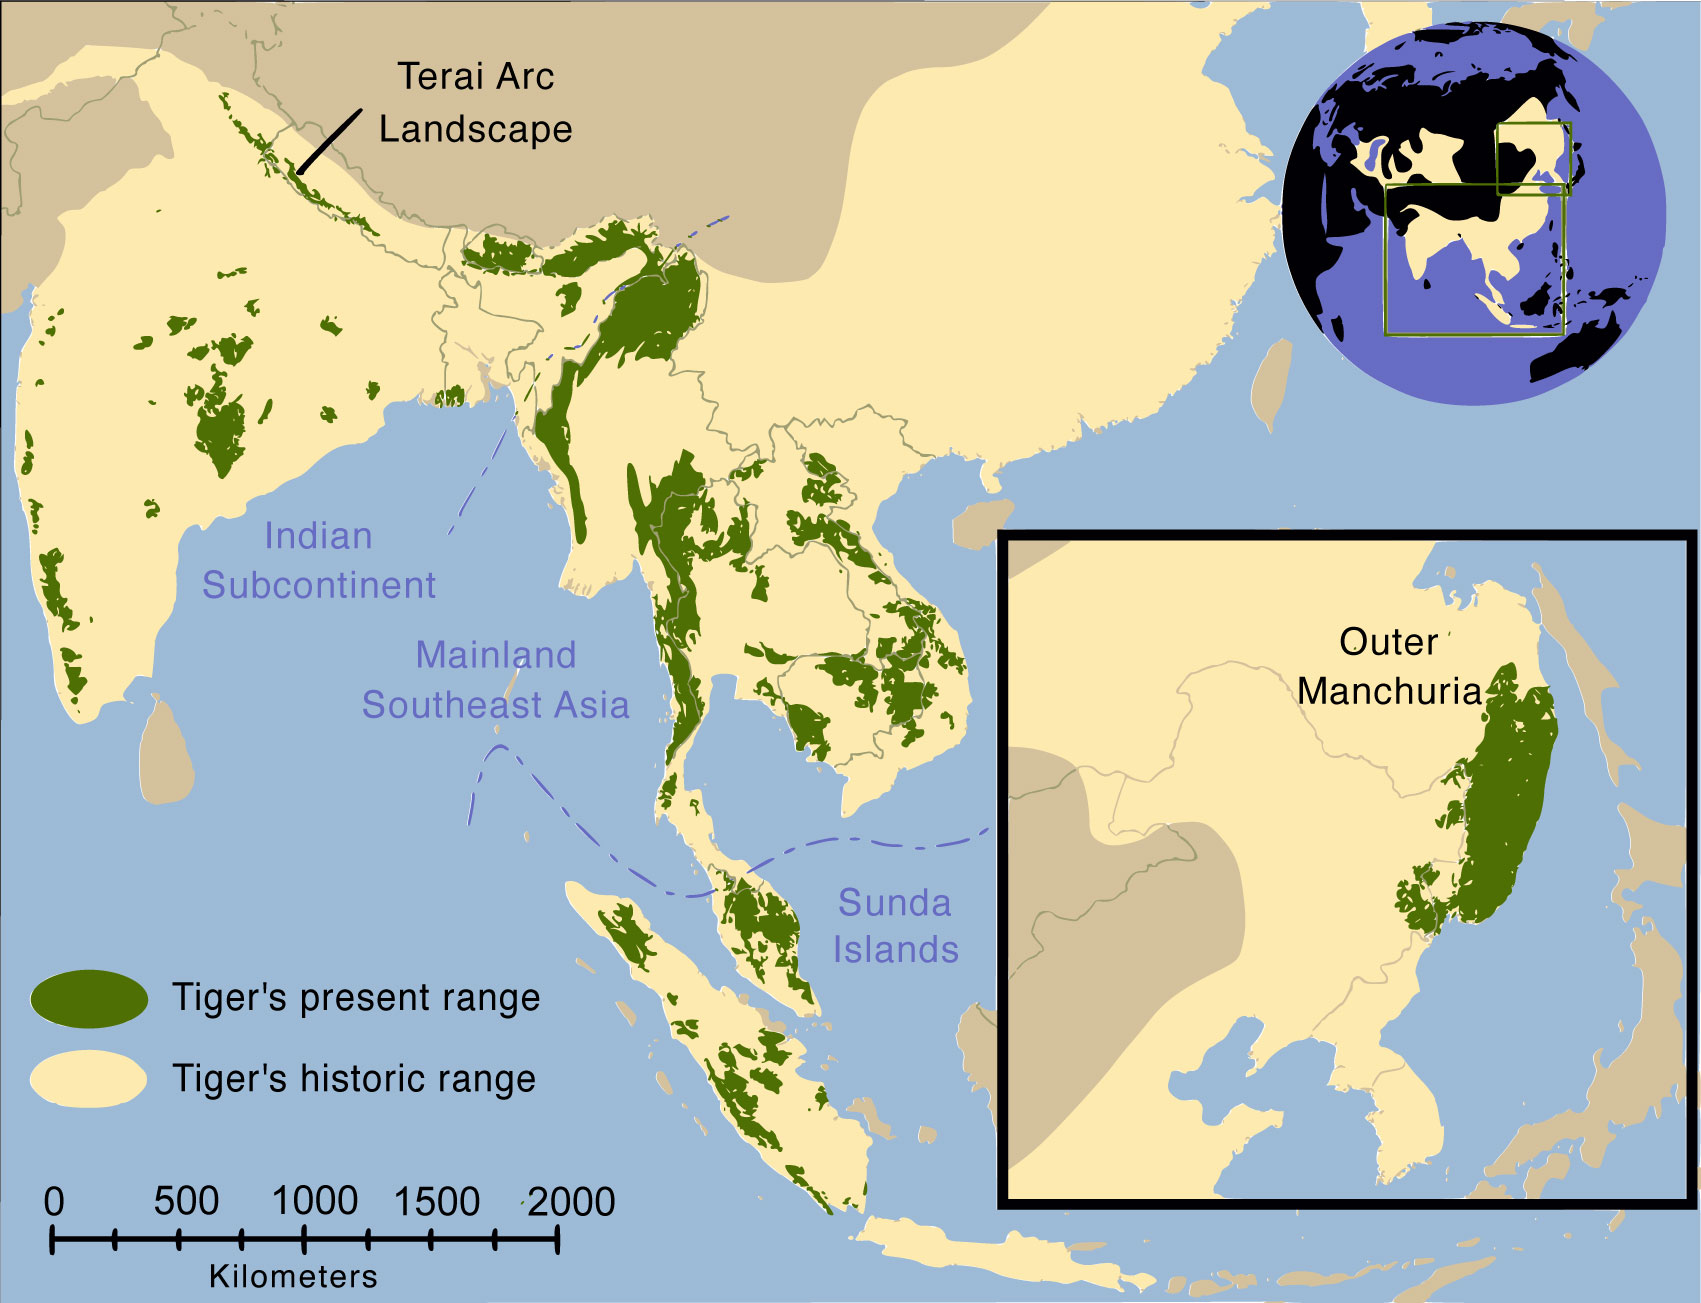 老虎亚洲分布图图片